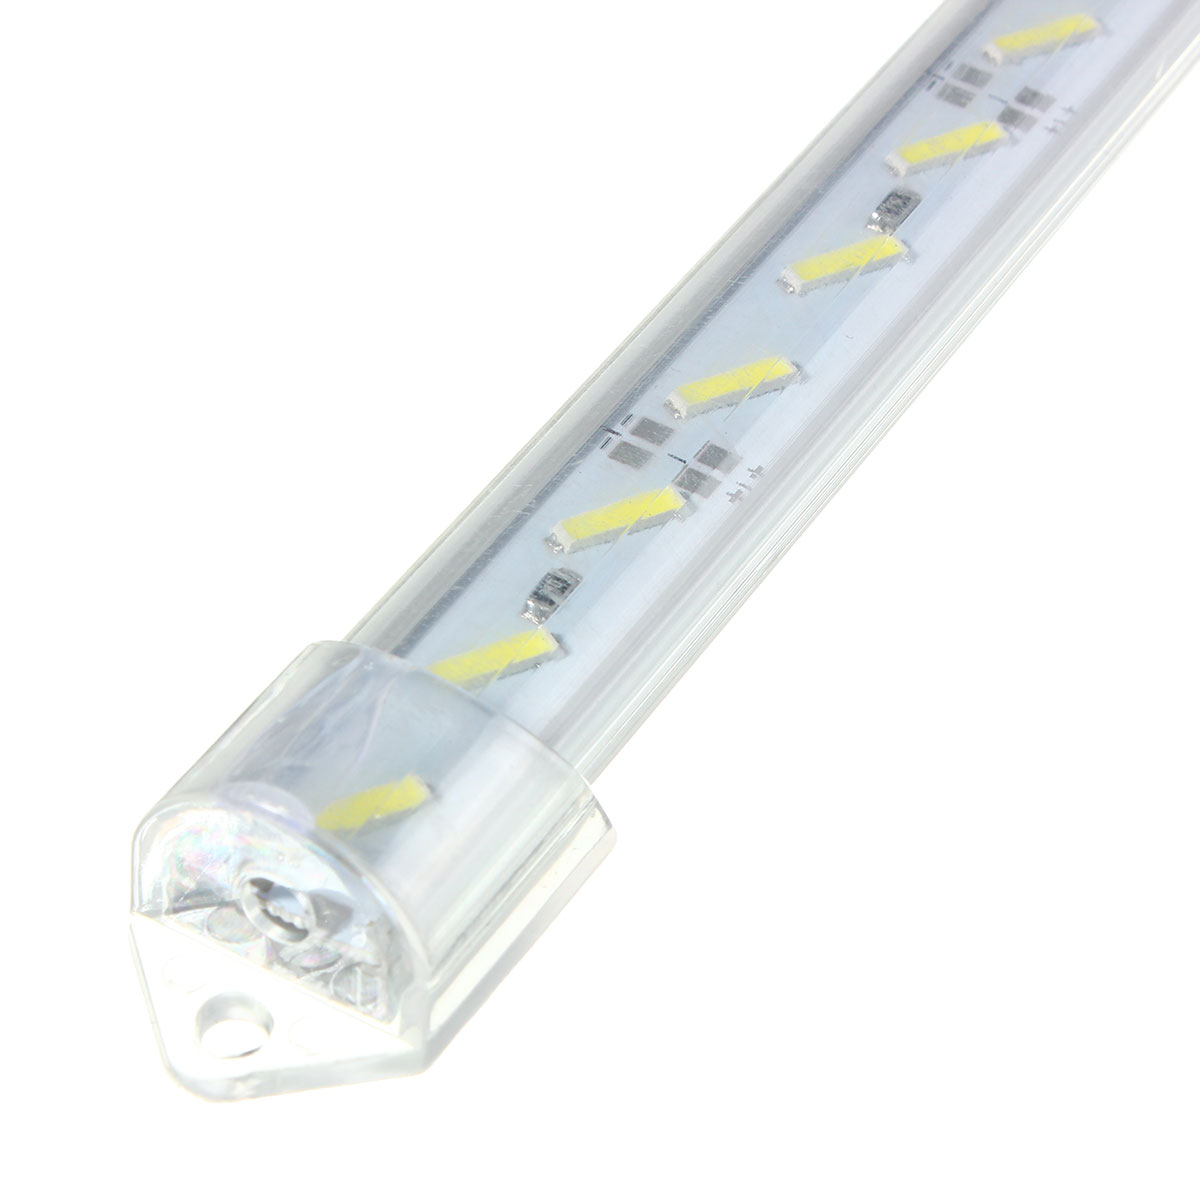 30CM-8520-SMD-Cool-White-LED-Rigid-Strip-Aluminum-MilkClear-Case-Tube-Light-Lamp-DC12V-1106619